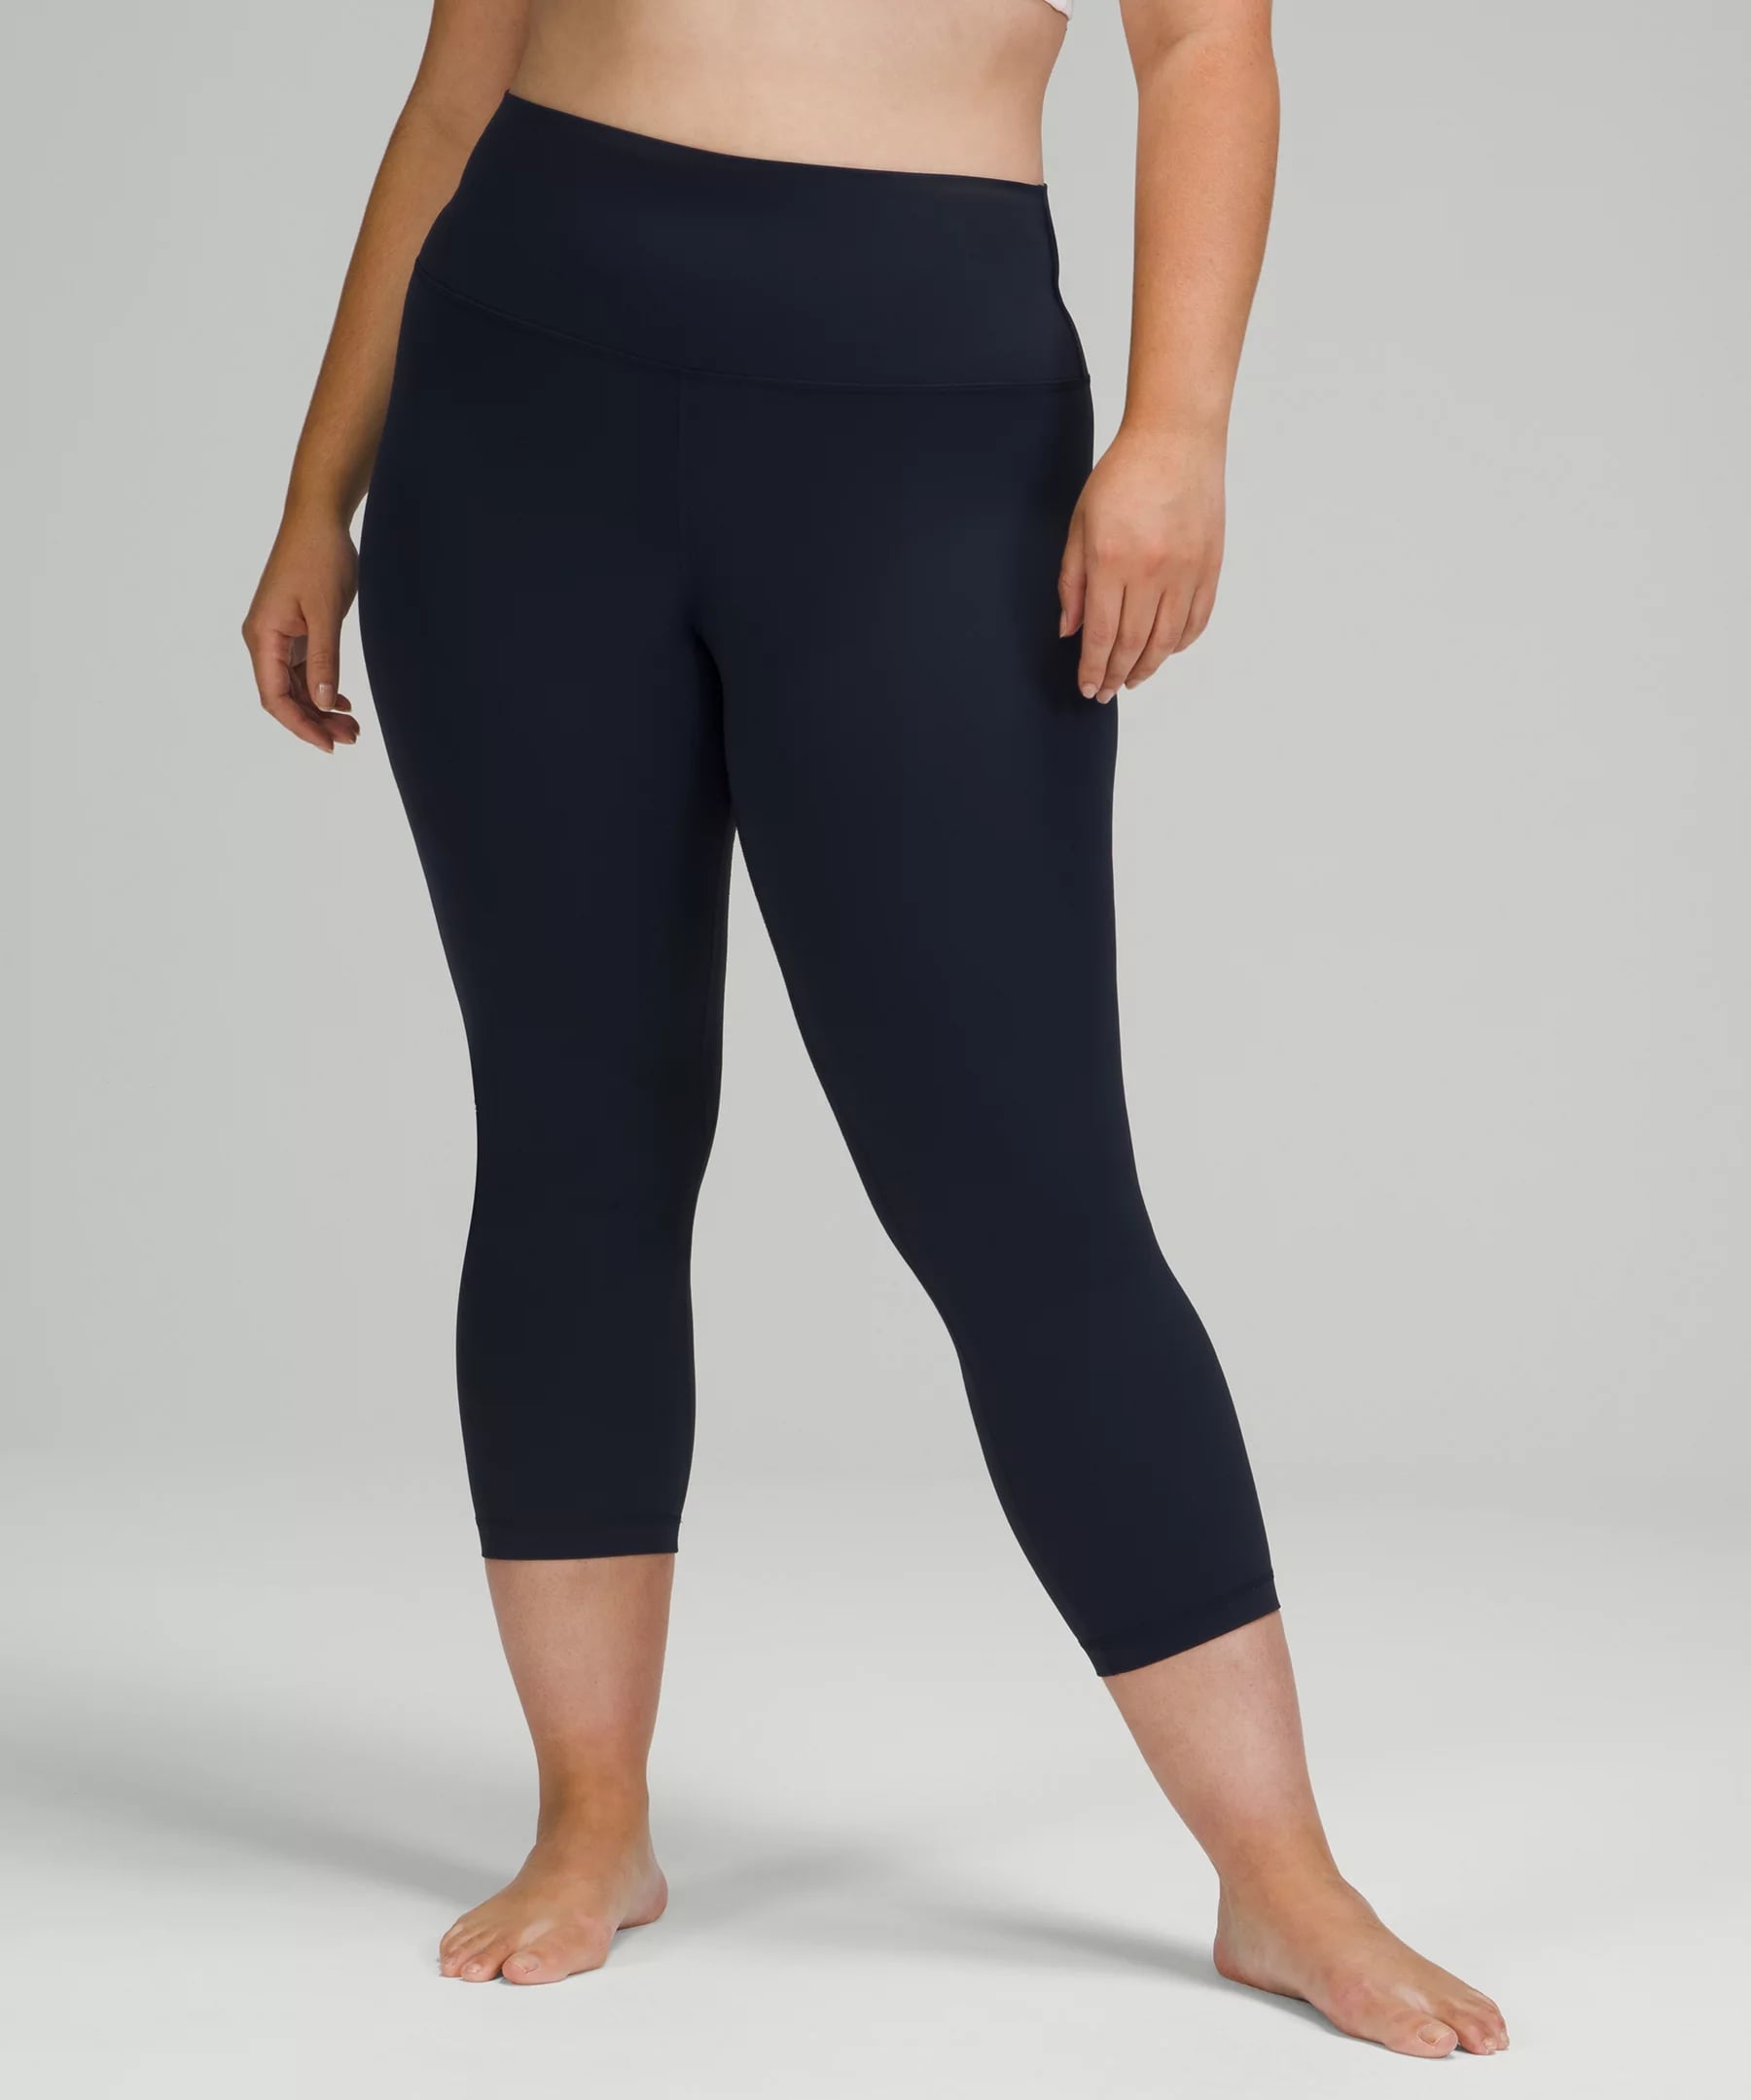 lululemon Align Jogger High Rise Size 8 Nulu Black Woman's Crop Pants